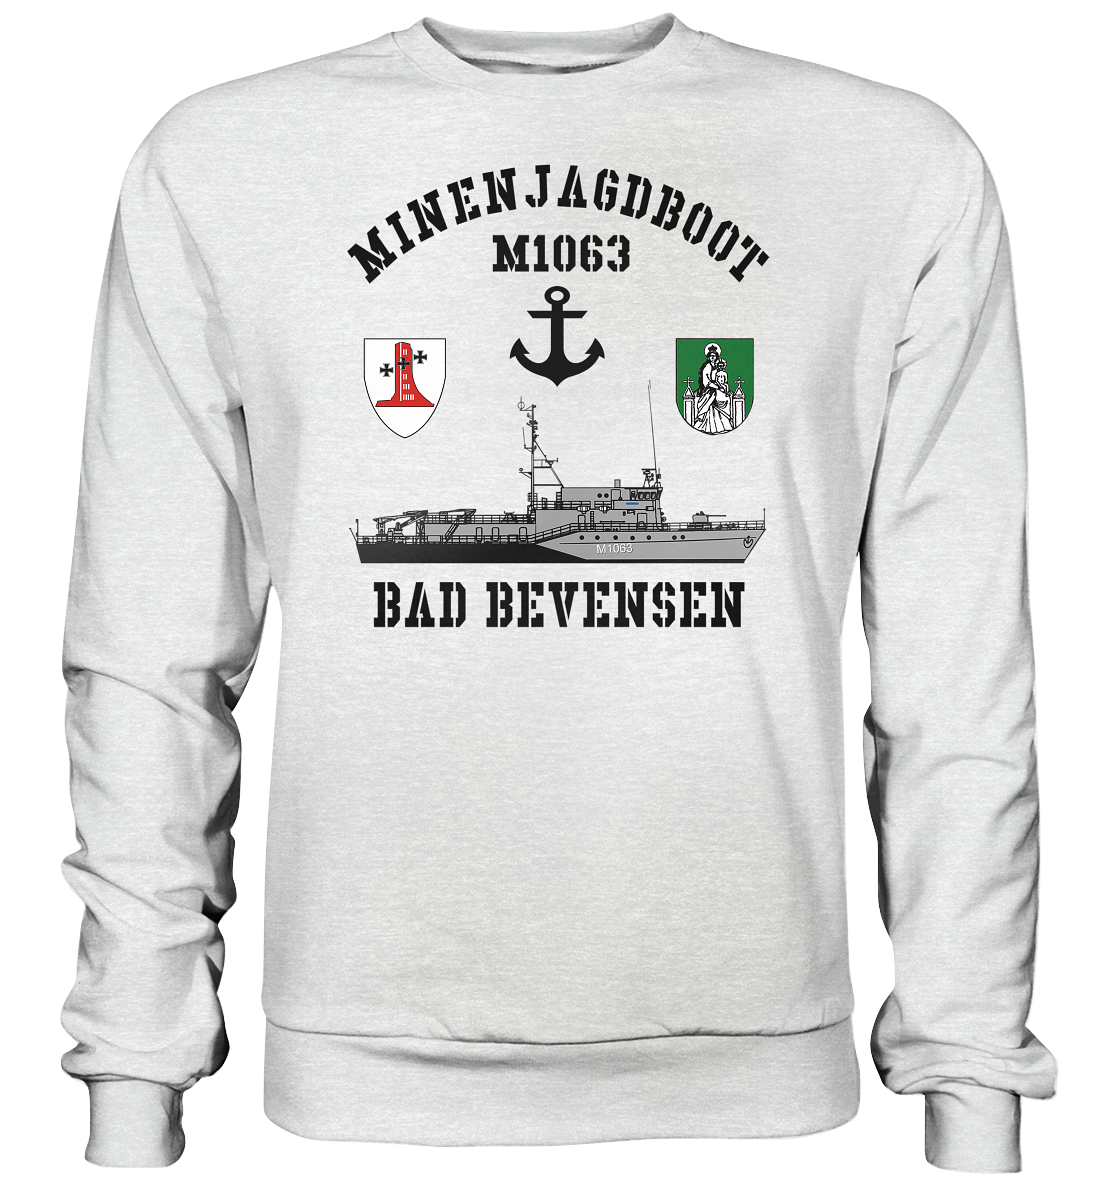 Mij.-Boot M1063 BAD BEVENSEN Anker 1.MSG - Premium Sweatshirt